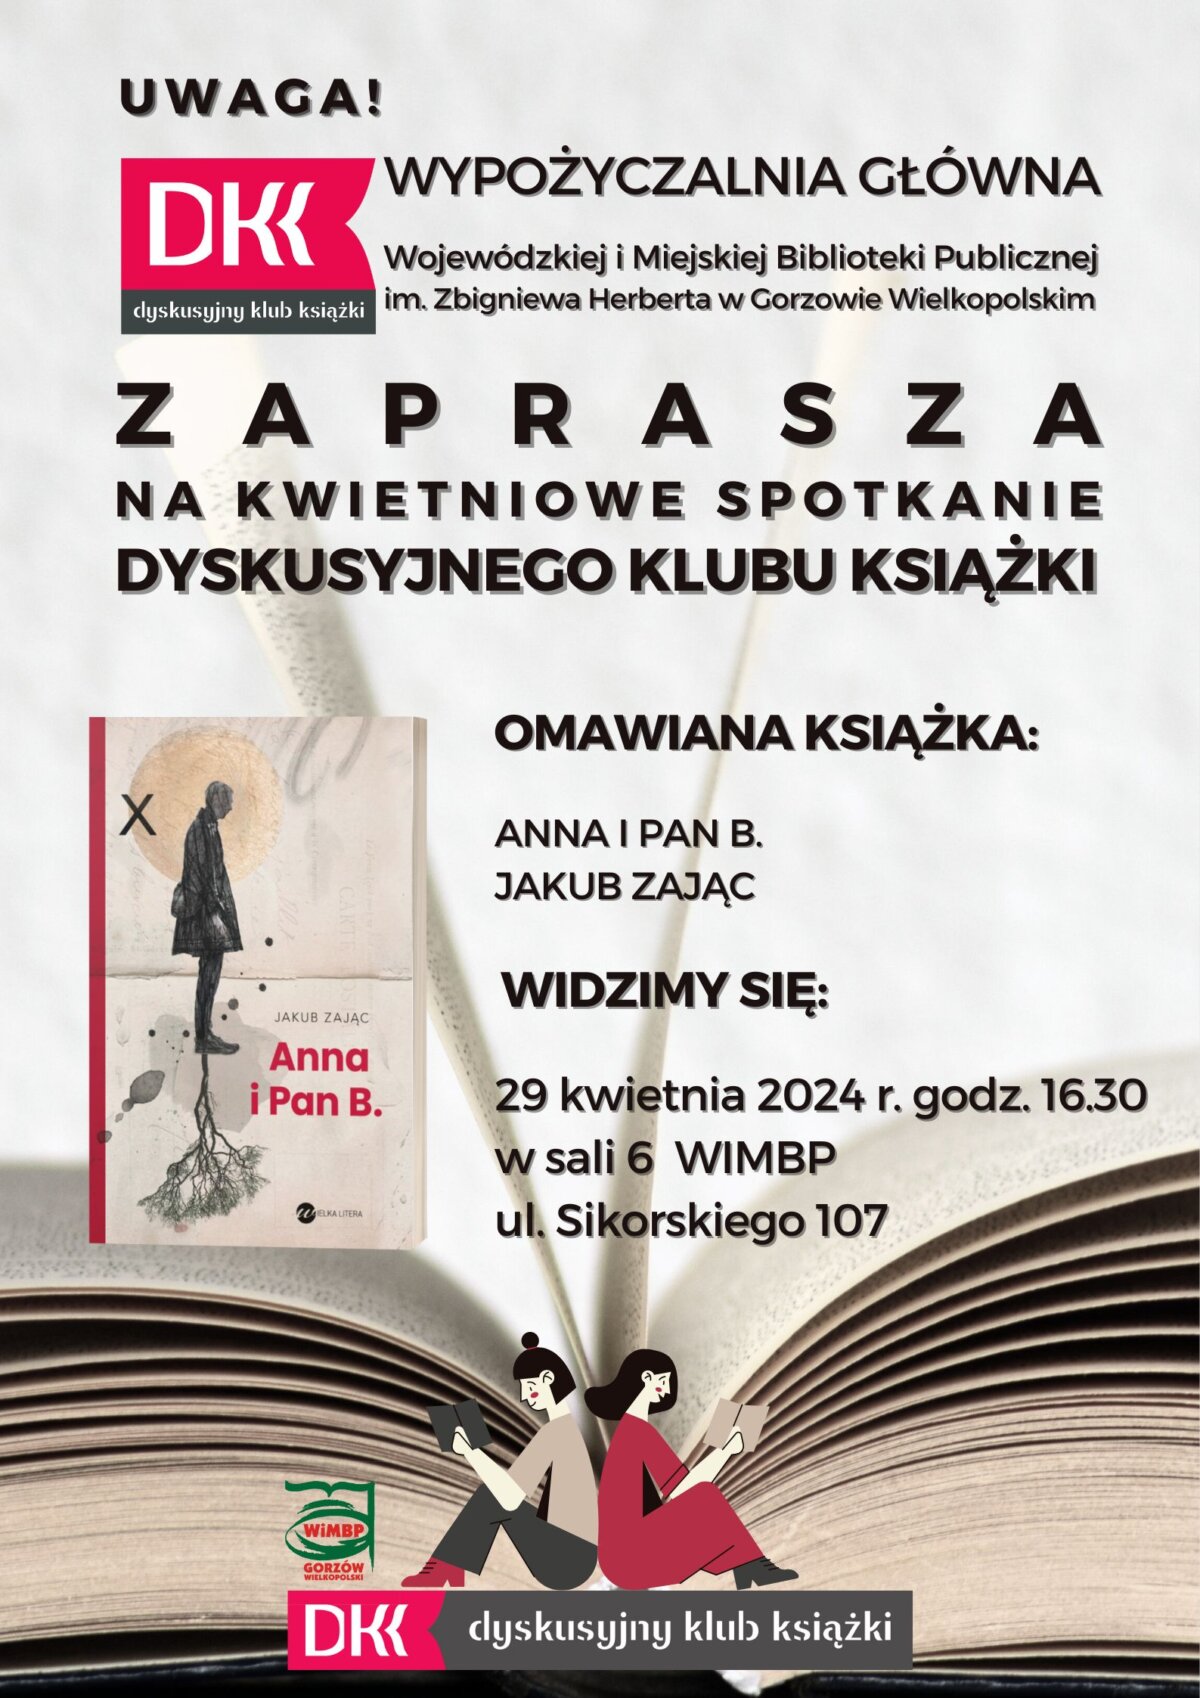 plakat promujący kolejne spotkanie DKK, tym razem "ANNA I PAN B."